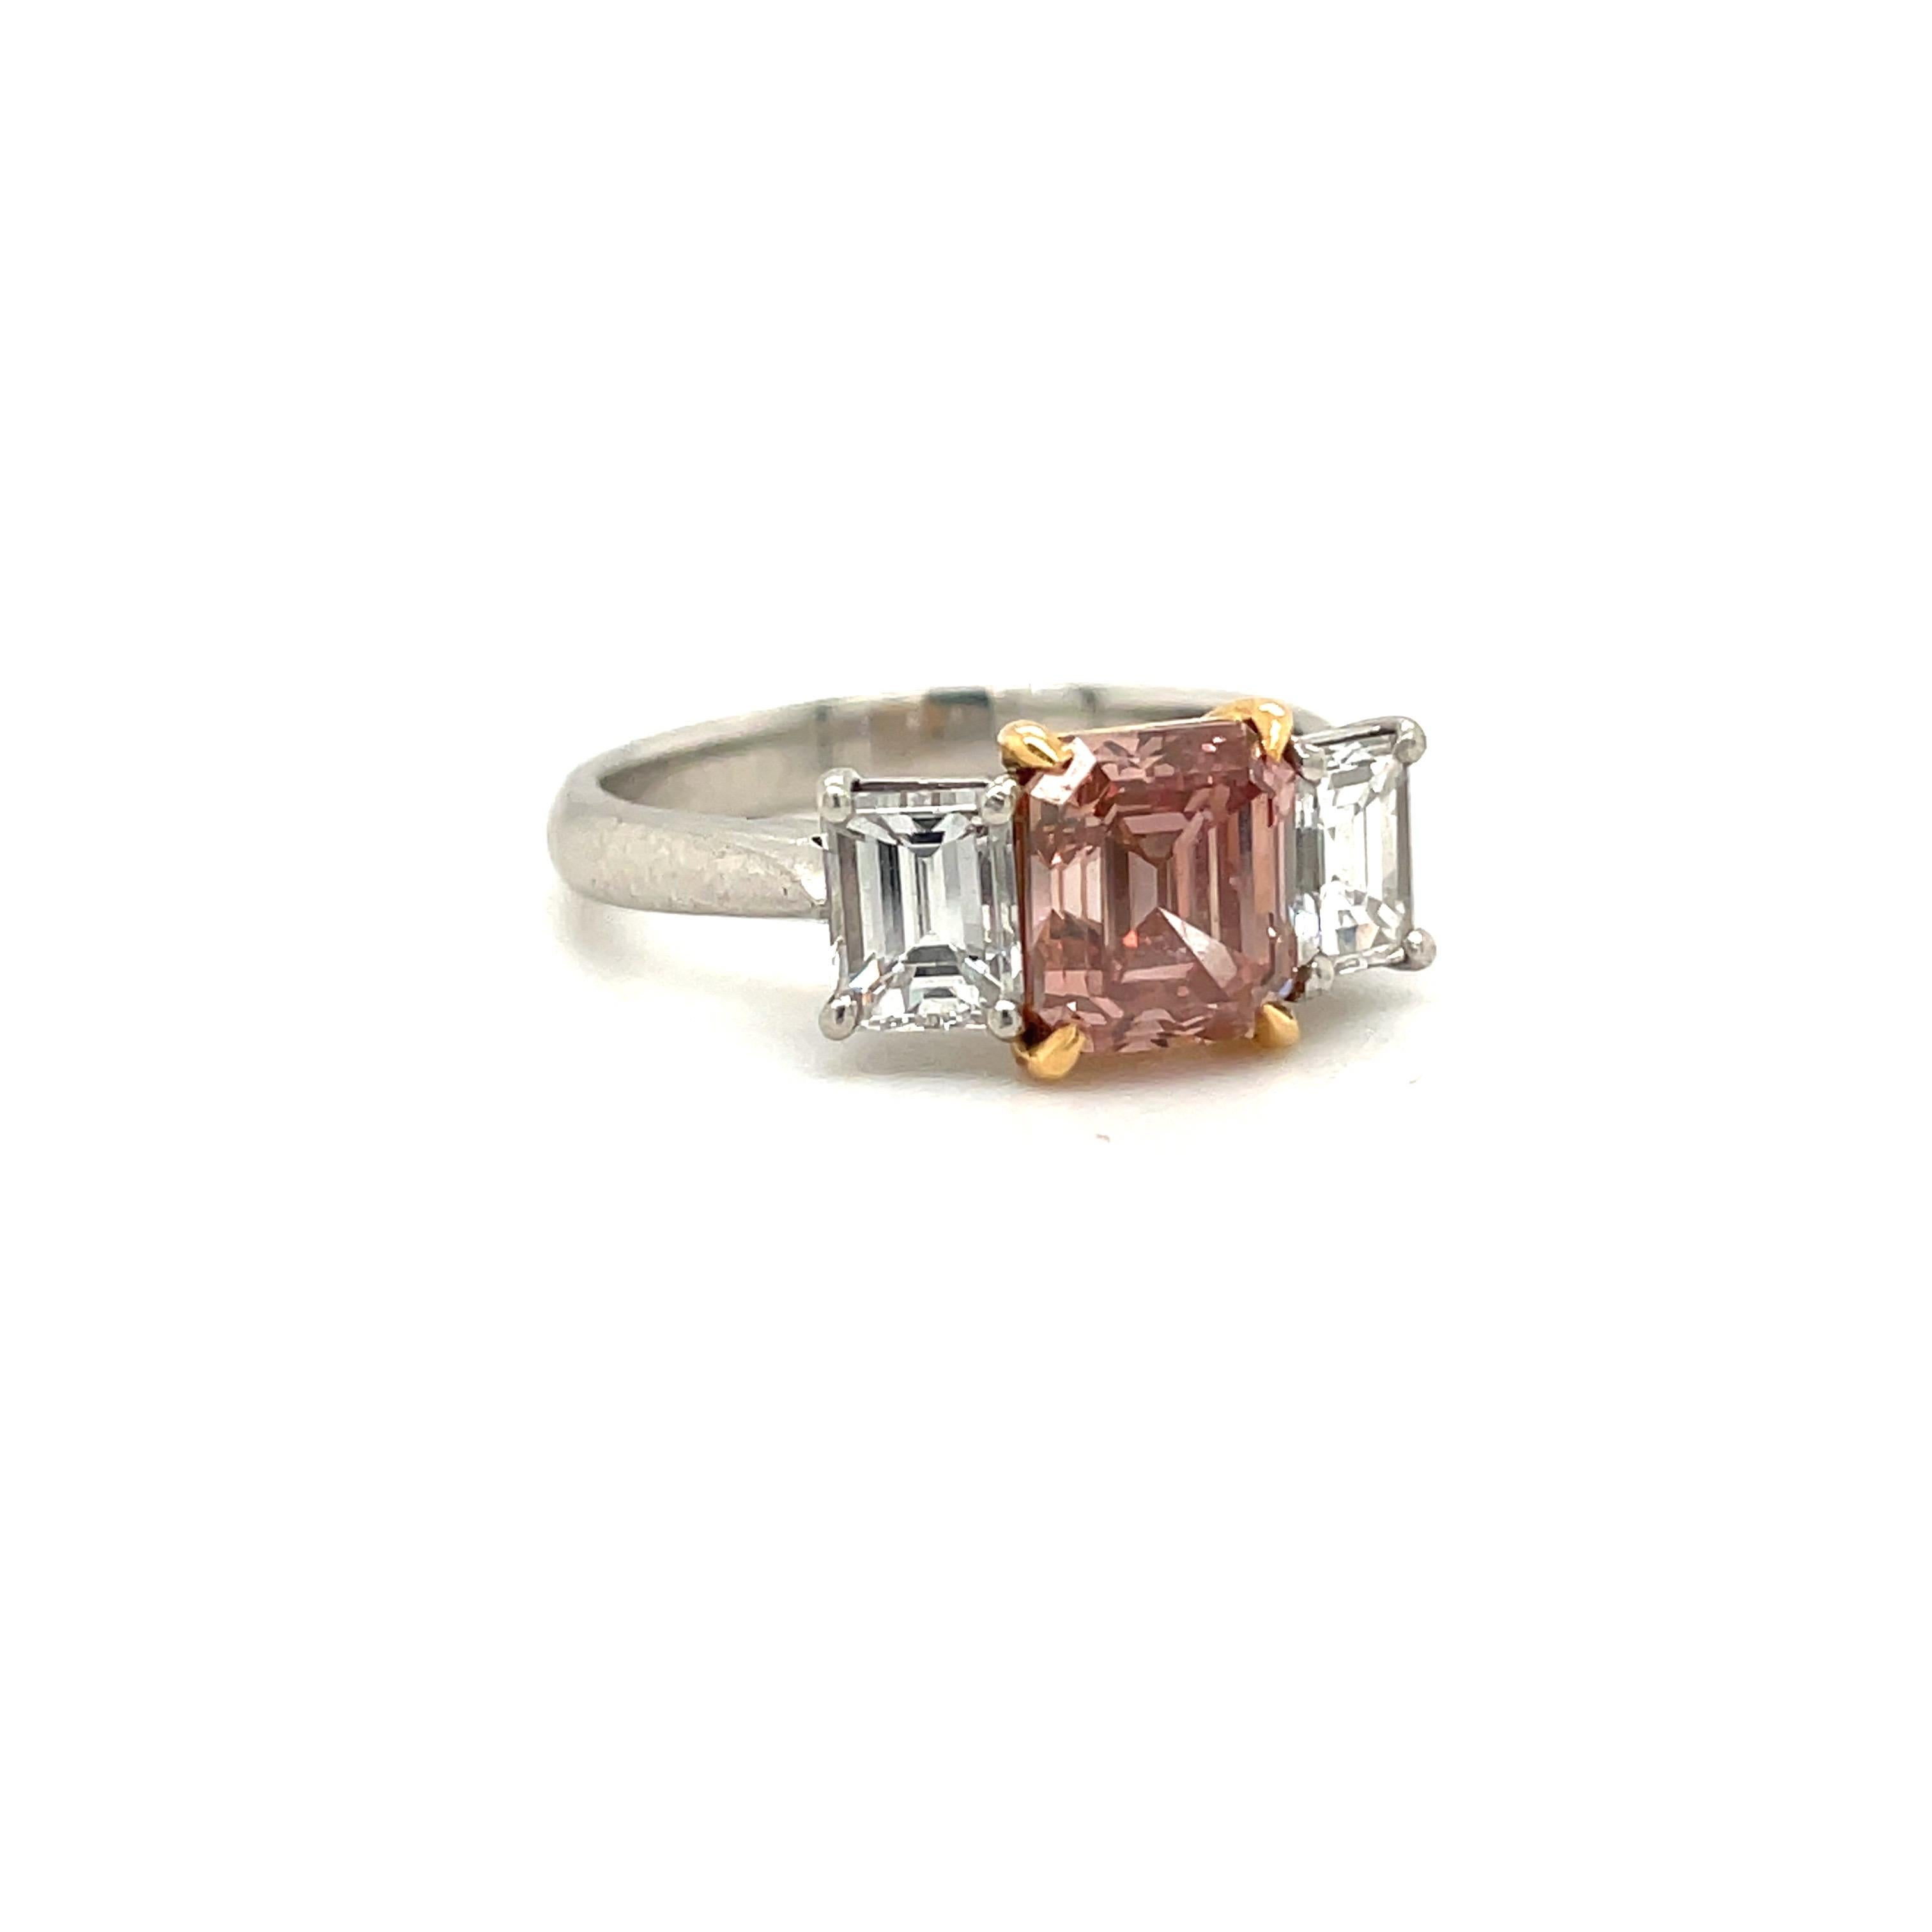 Diamant taille émeraude de couleur naturelle, certifié par le GIA, de couleur brun-orange-rose, monté avec des pierres latérales en diamant blanc taille émeraude ; dans une monture en platine et or rose 18 carats.
Véritablement unique en son genre,